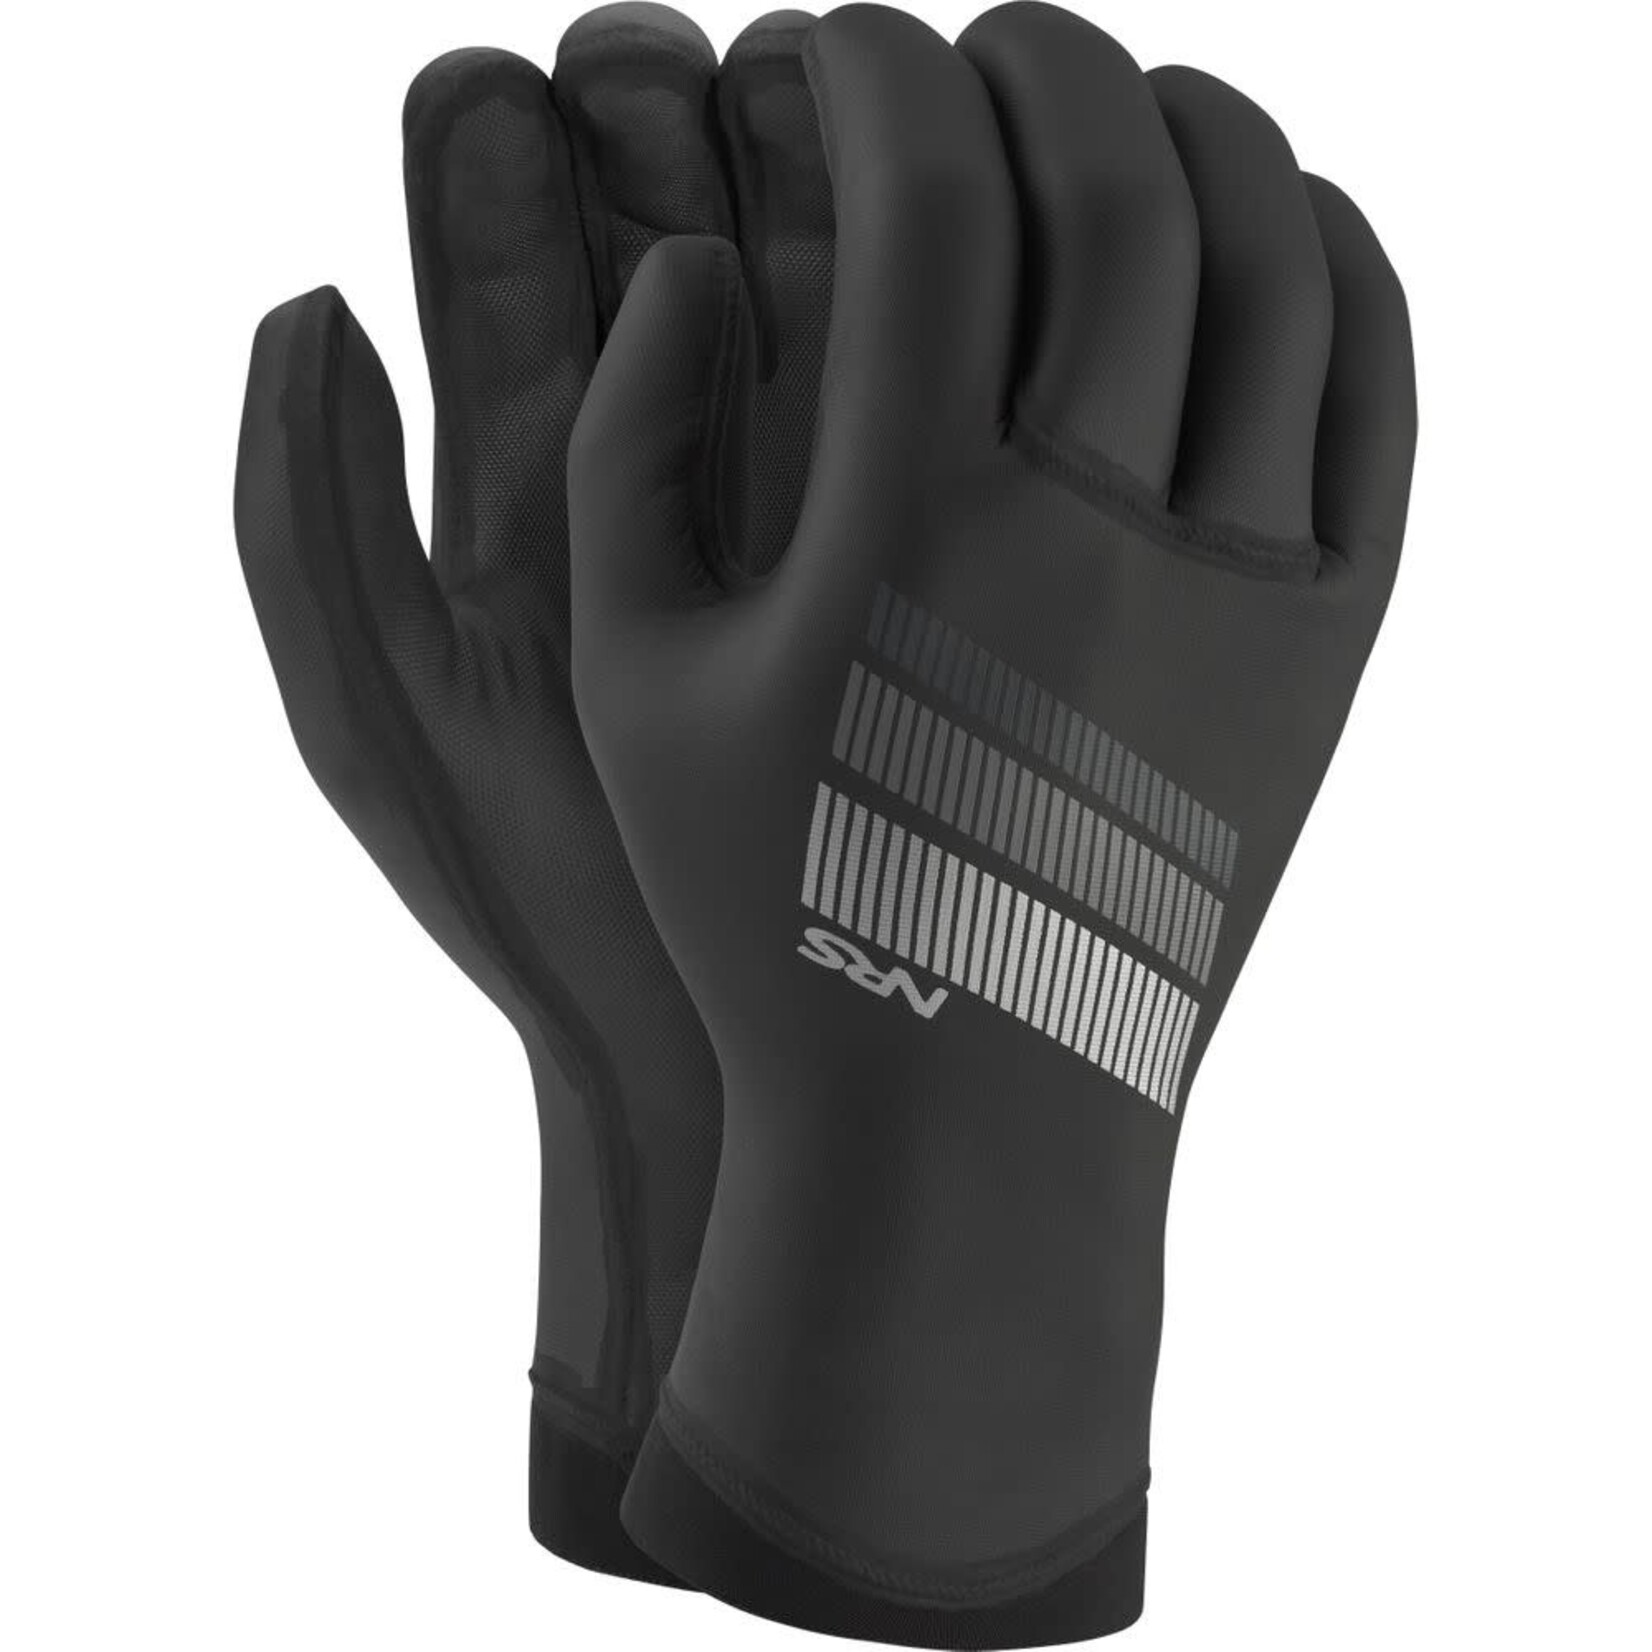 NRS, Inc NRS Maverick Gloves